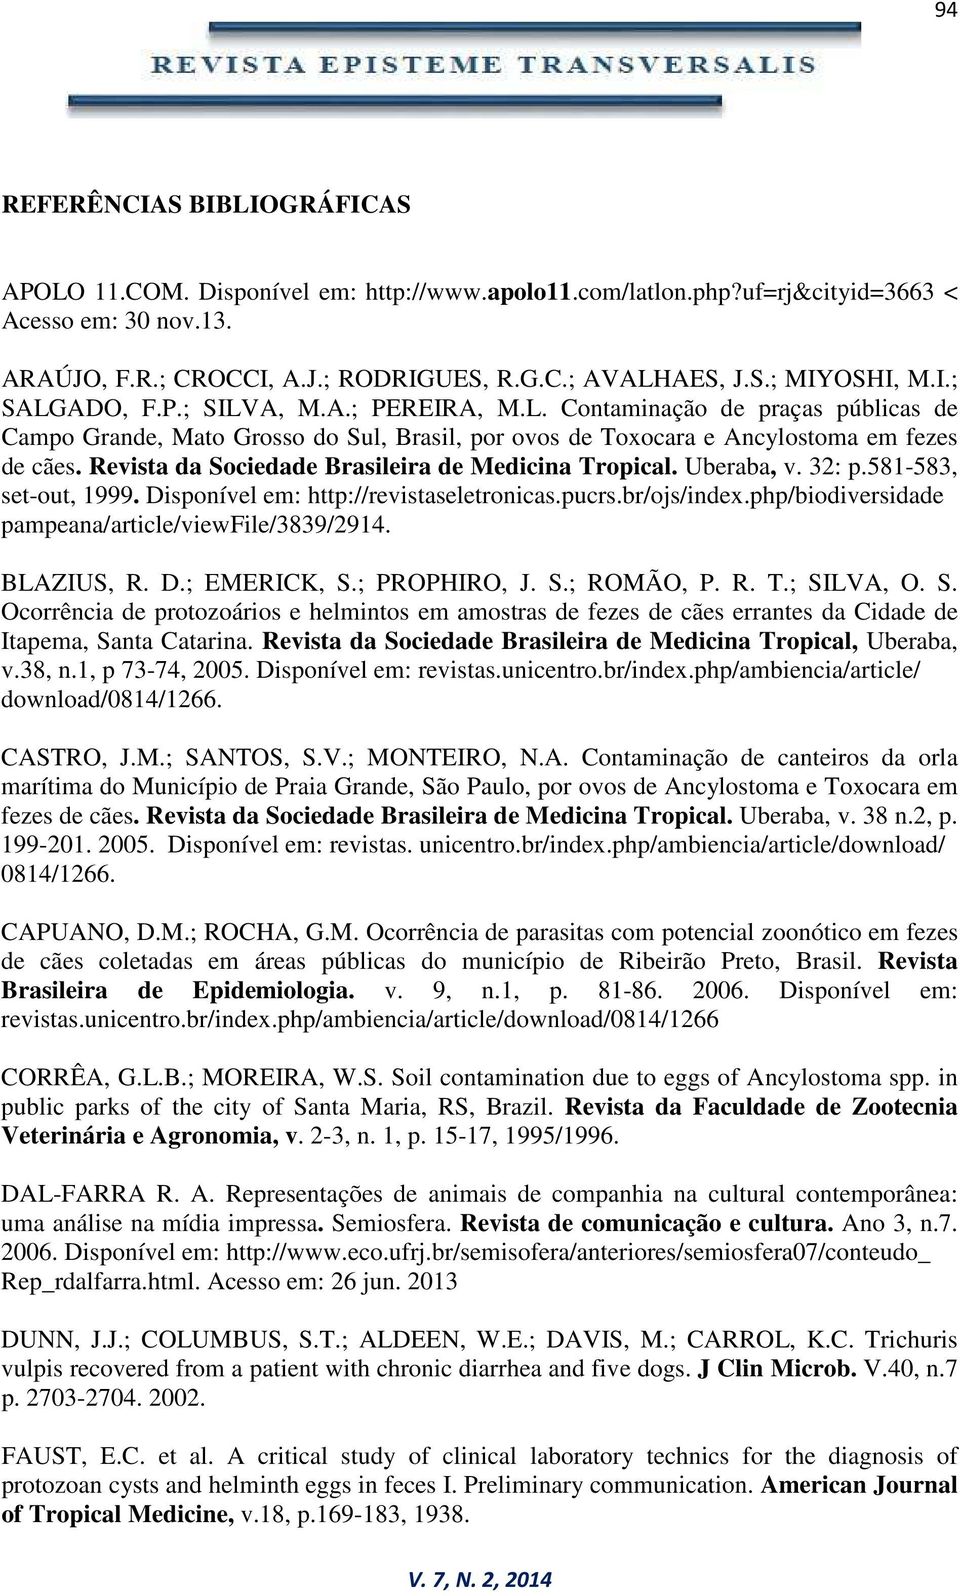 Revista da Sociedade Brasileira de Medicina Tropical. Uberaba, v. 32: p.581-583, set-out, 1999. Disponível em: http://revistaseletronicas.pucrs.br/ojs/index.